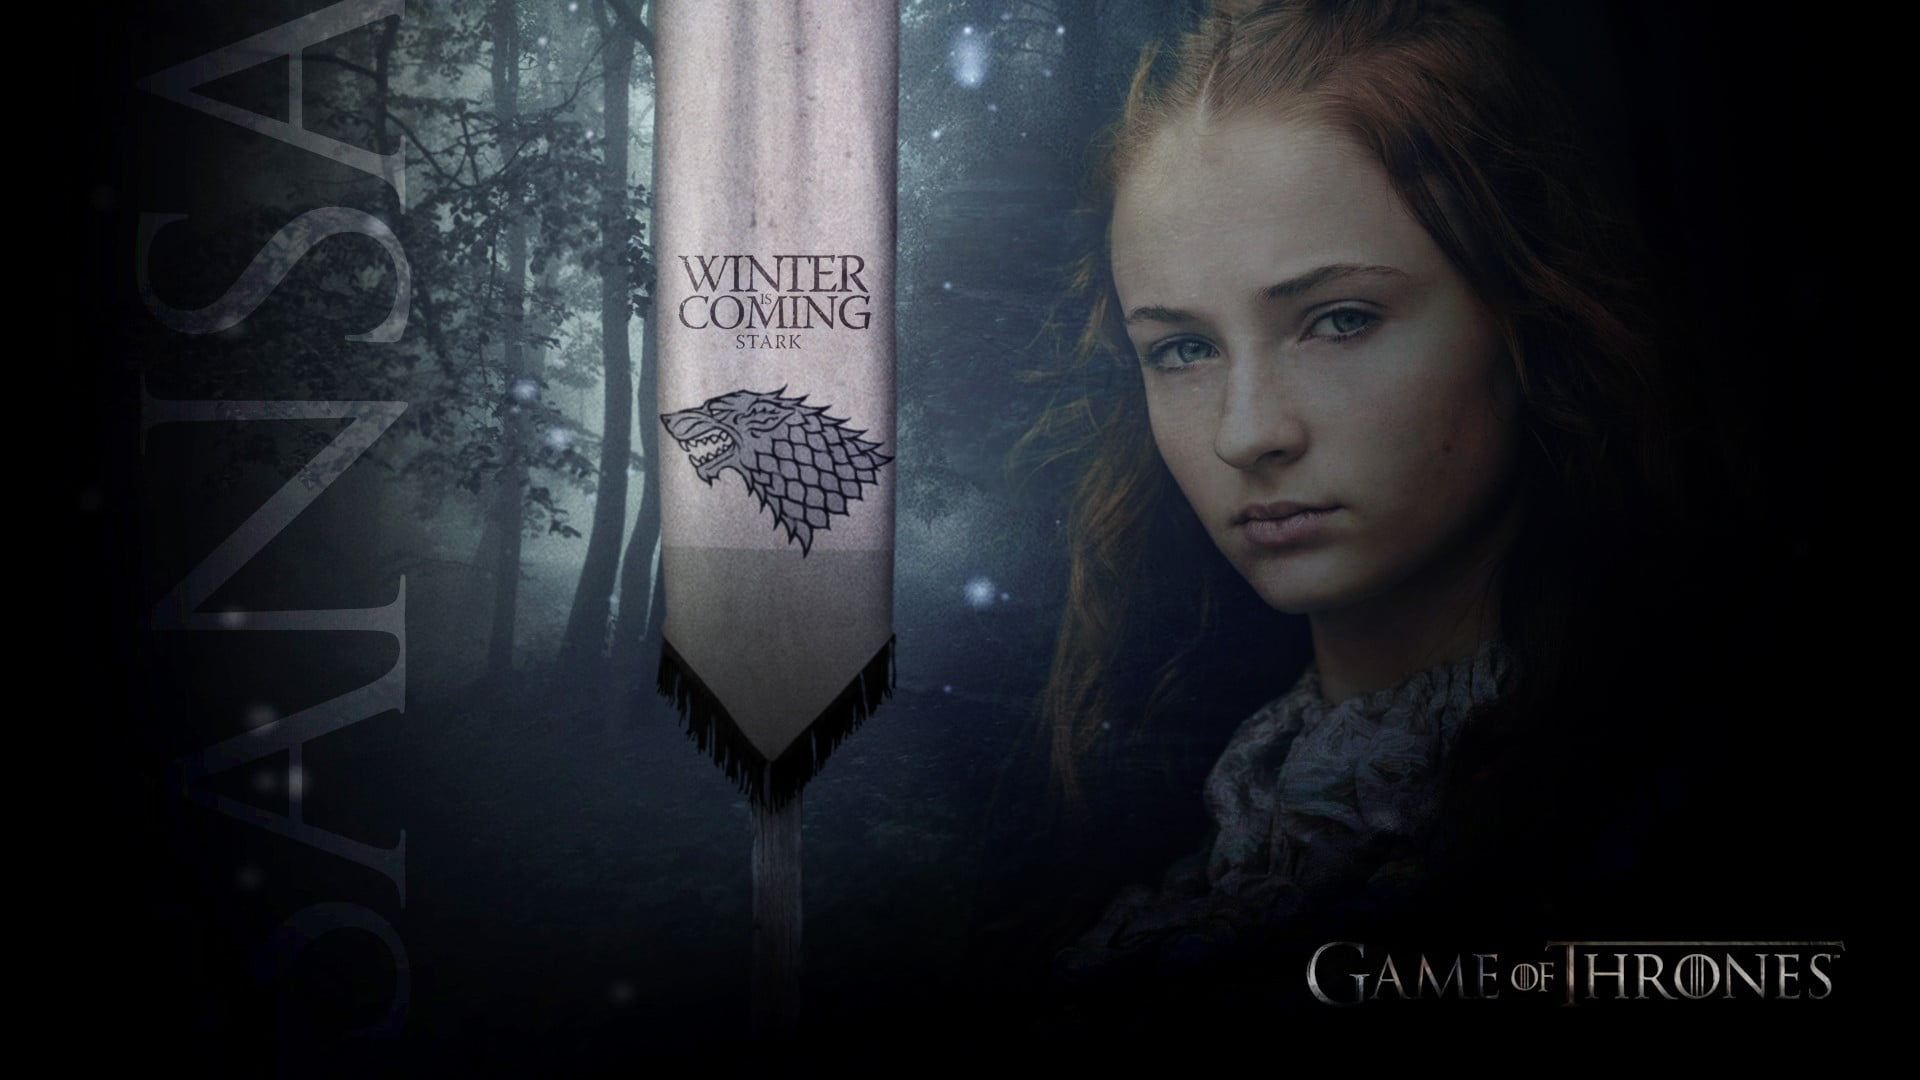 Game of Thrones wallpaper, Sansa Stark, teen , teens, portrait